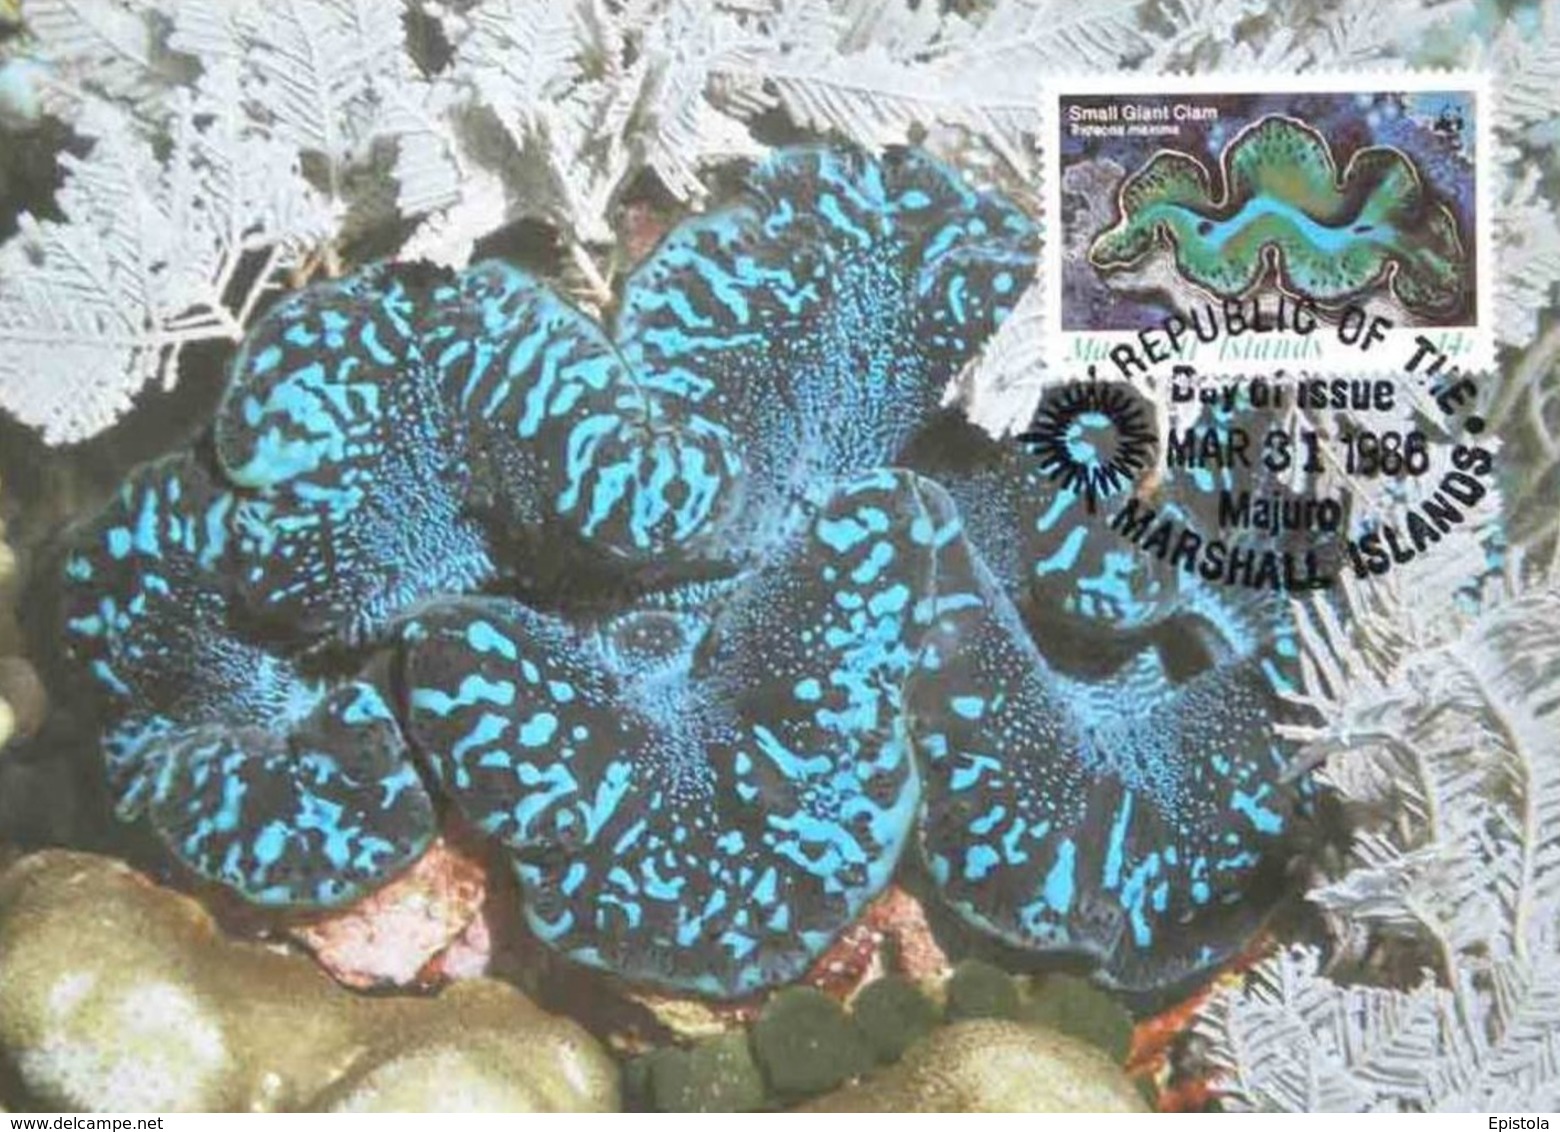 Marshall Islands 1986 Maximum Card Fauna WWF: Bénitier Géant , The Small Giant Clam (Tridecna Maxima) - Marshall